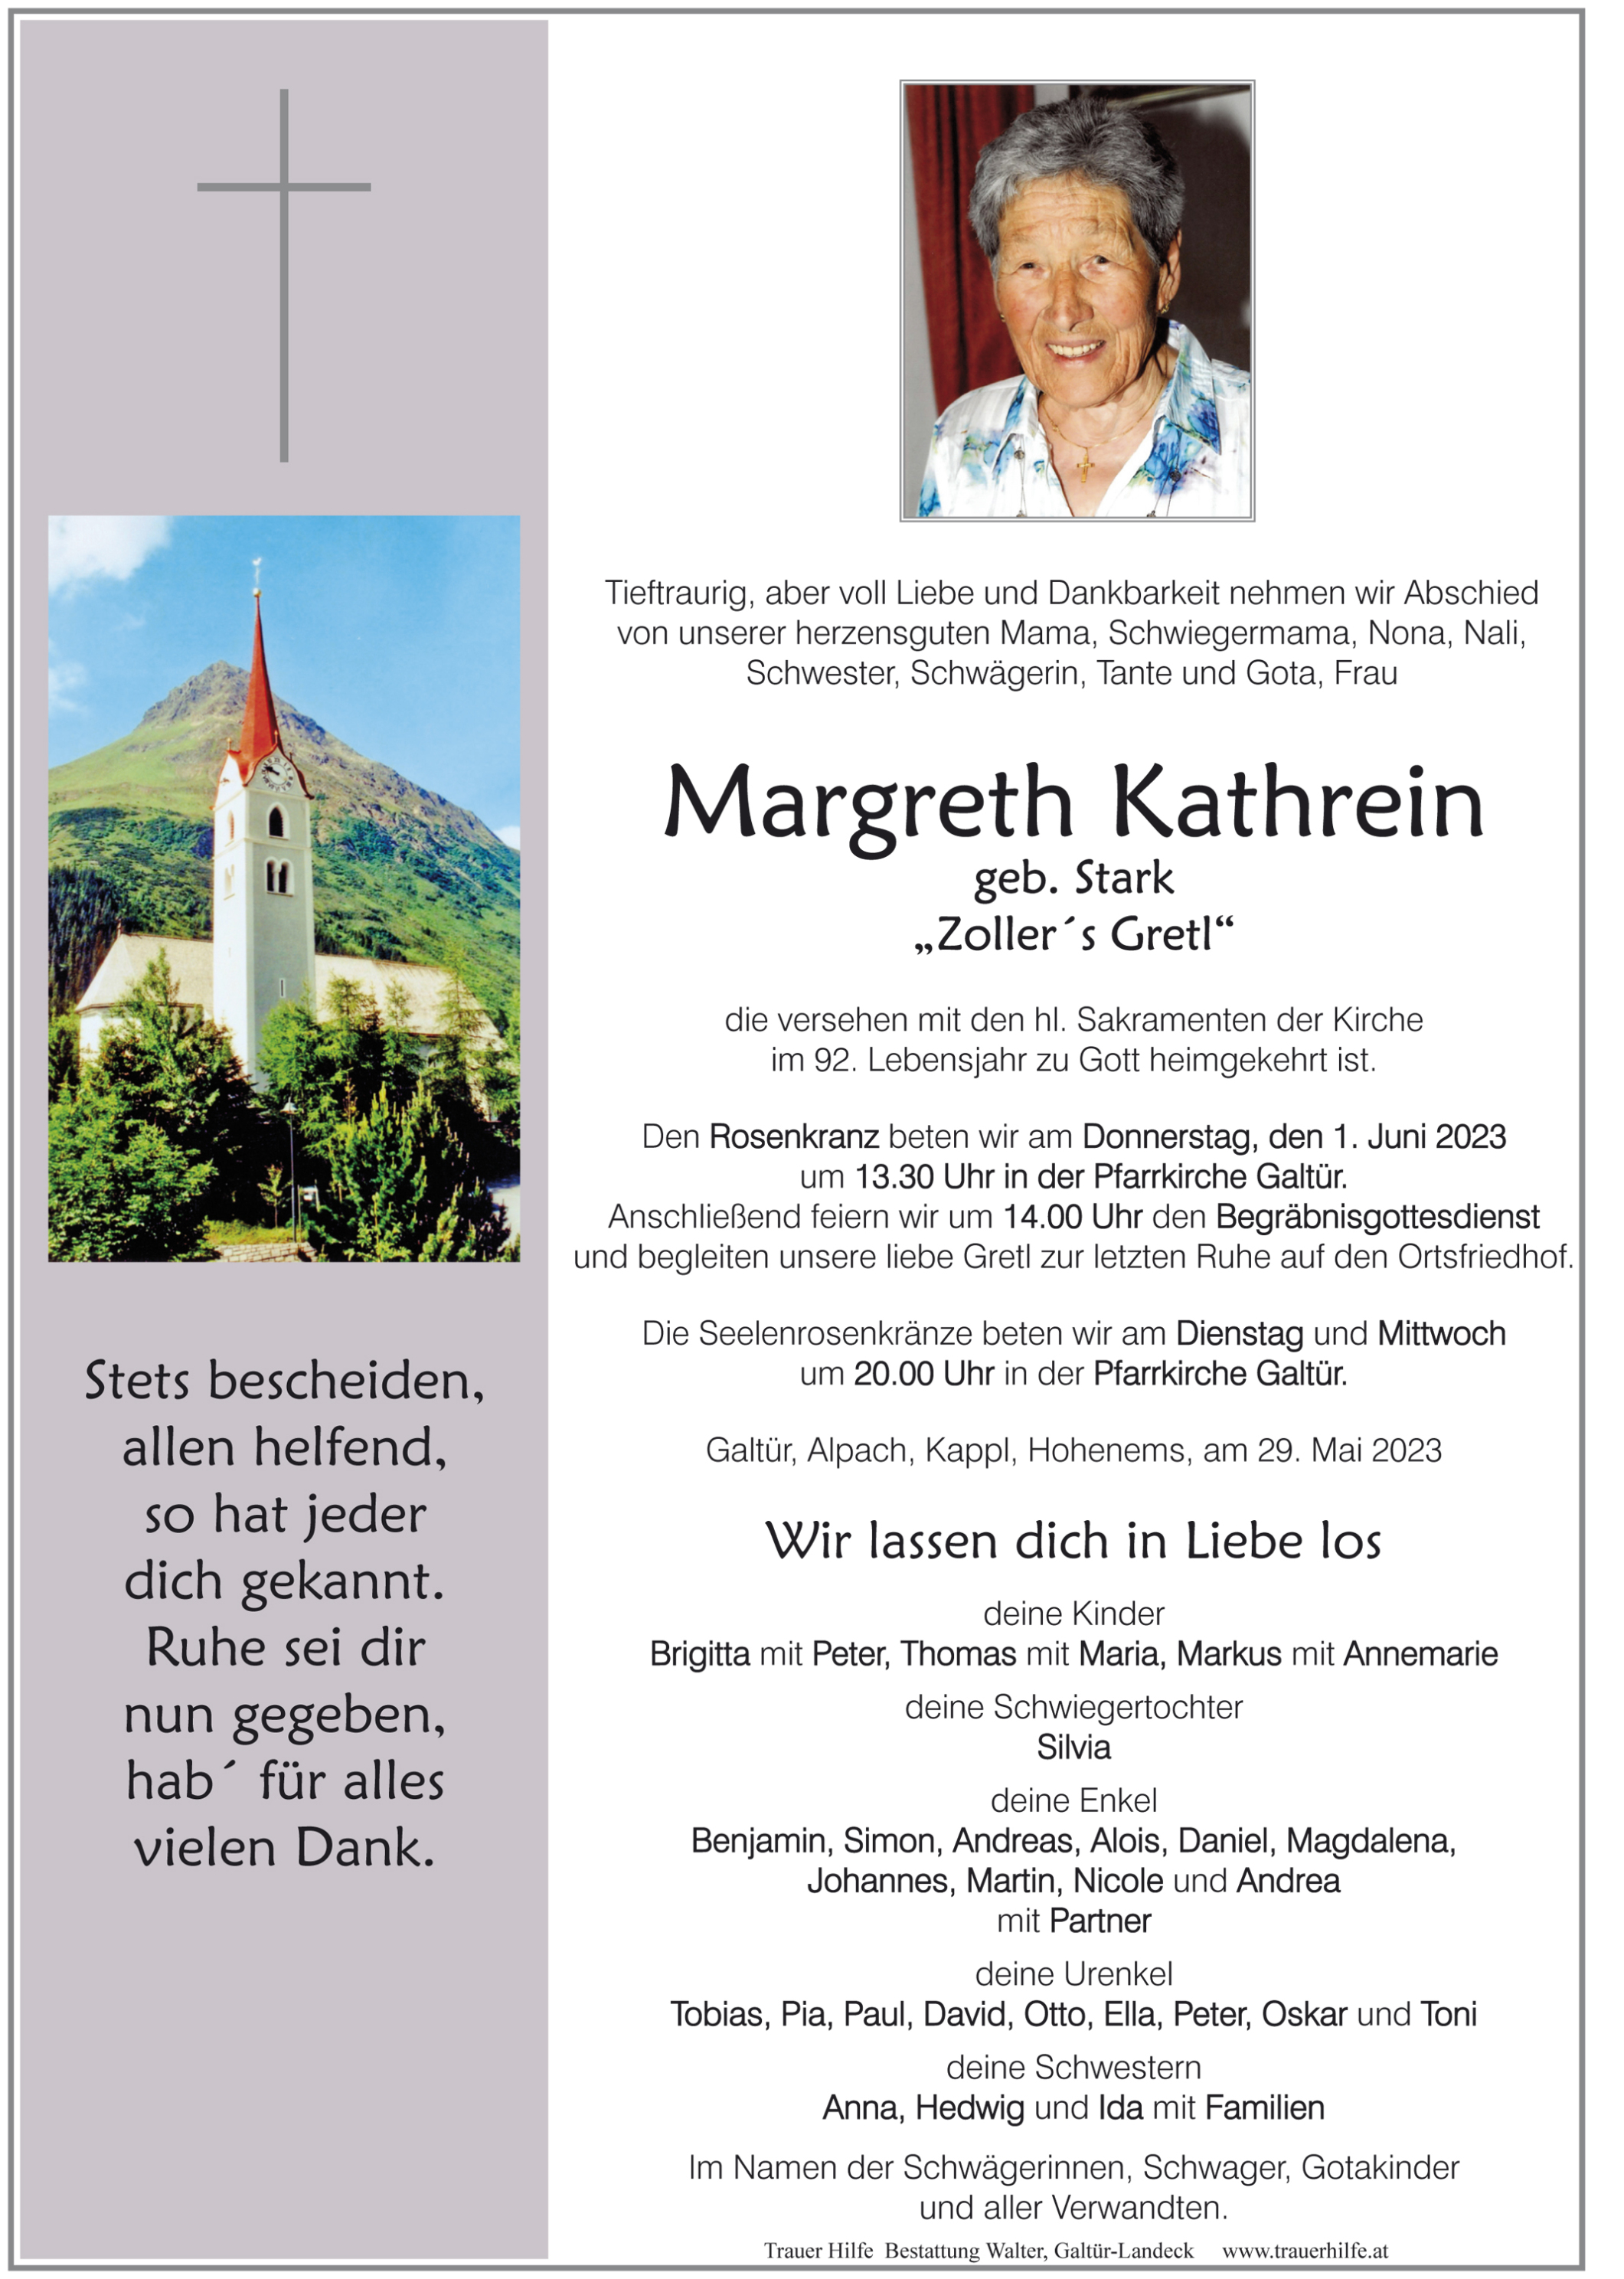 Margreth Kathrein